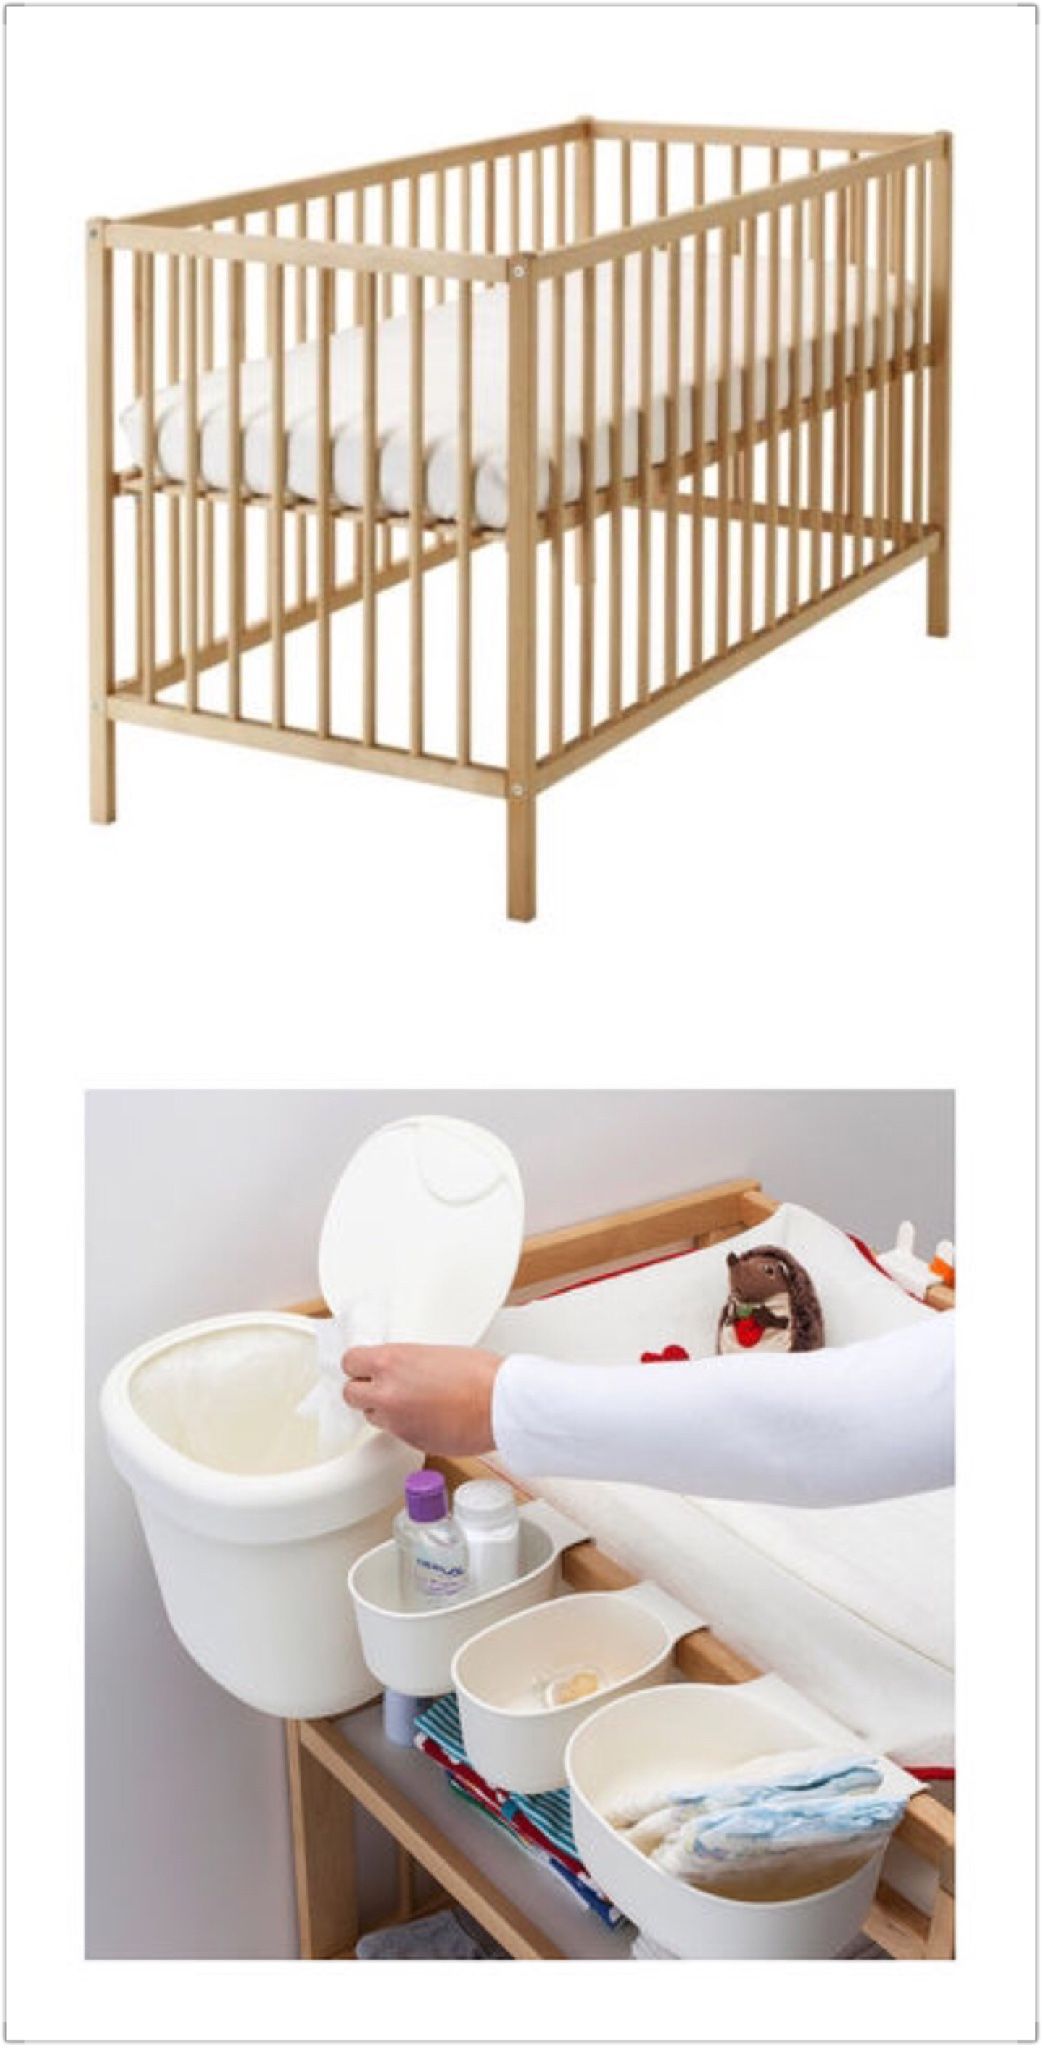 再po:IKEA SNIGLAR嬰兒床(95成新)